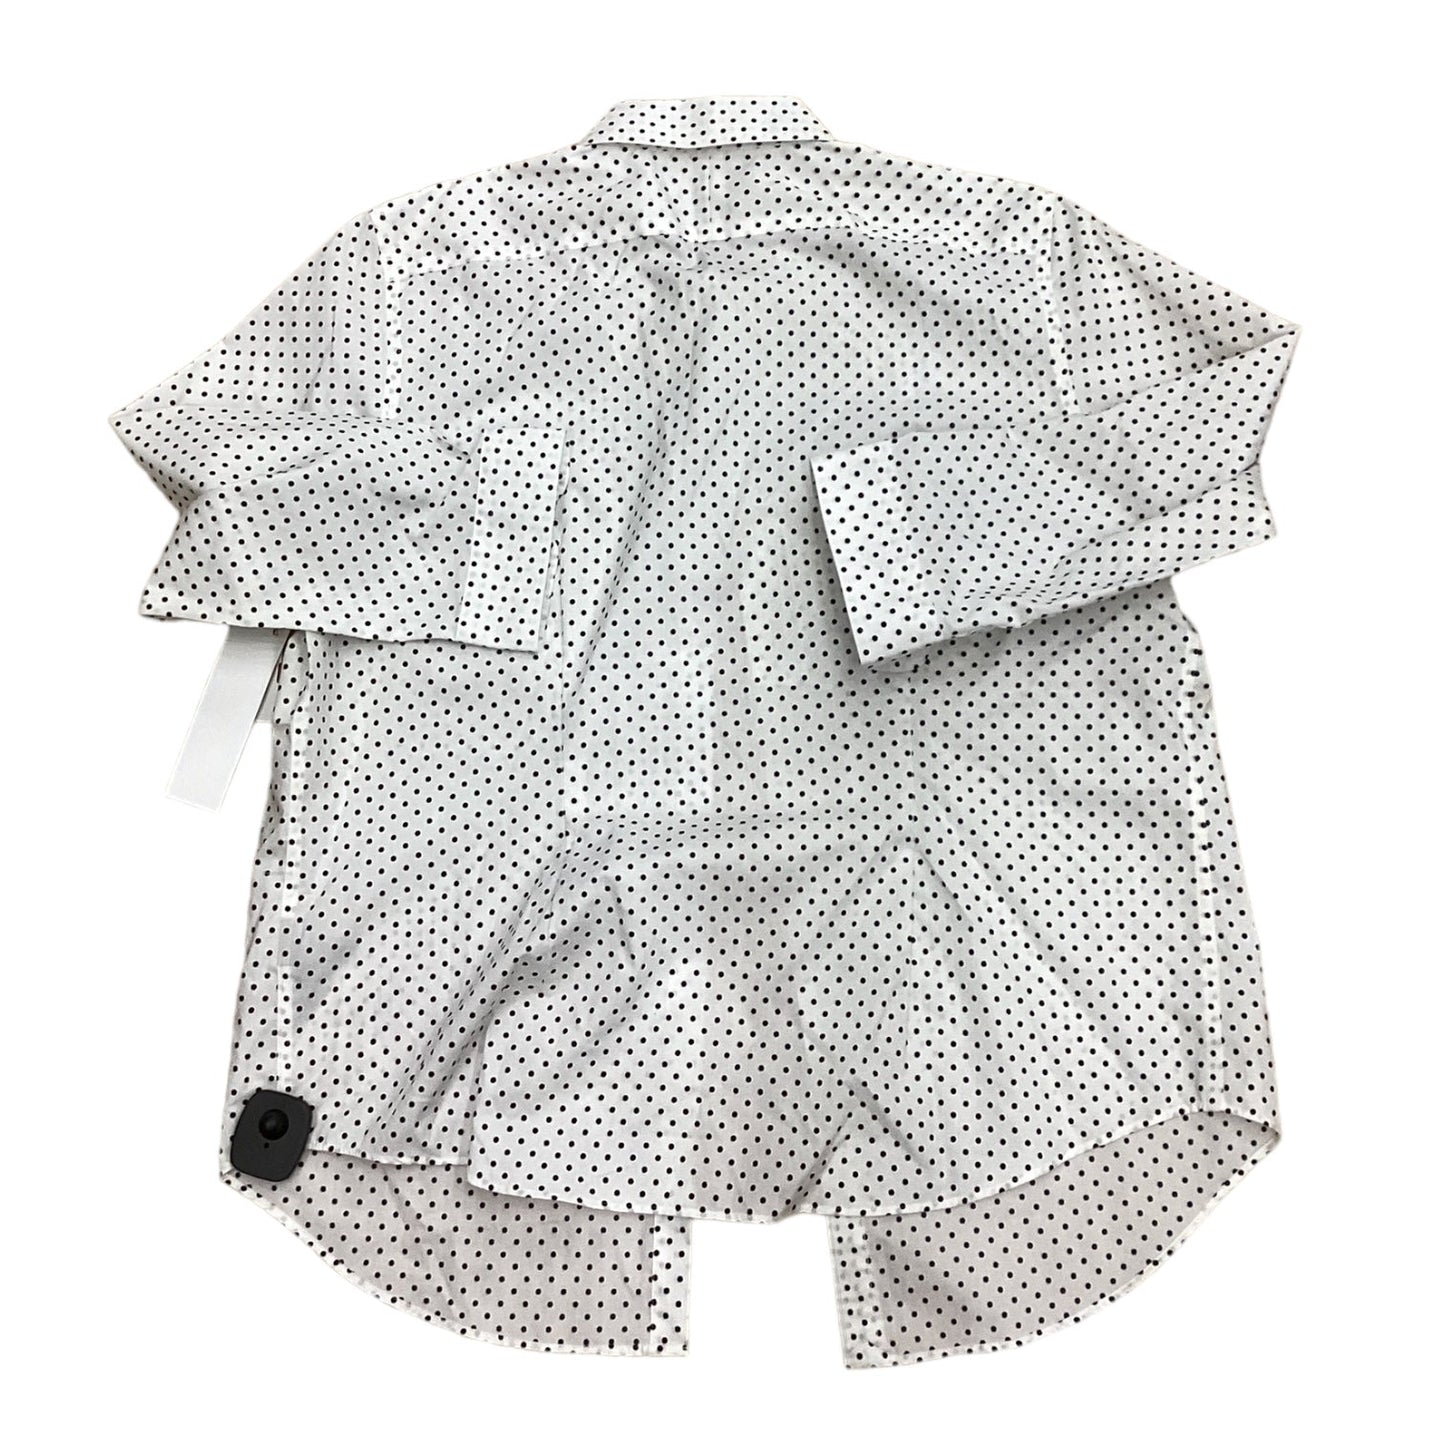 Polkadot Pattern Top Long Sleeve Lauren By Ralph Lauren, Size Xl